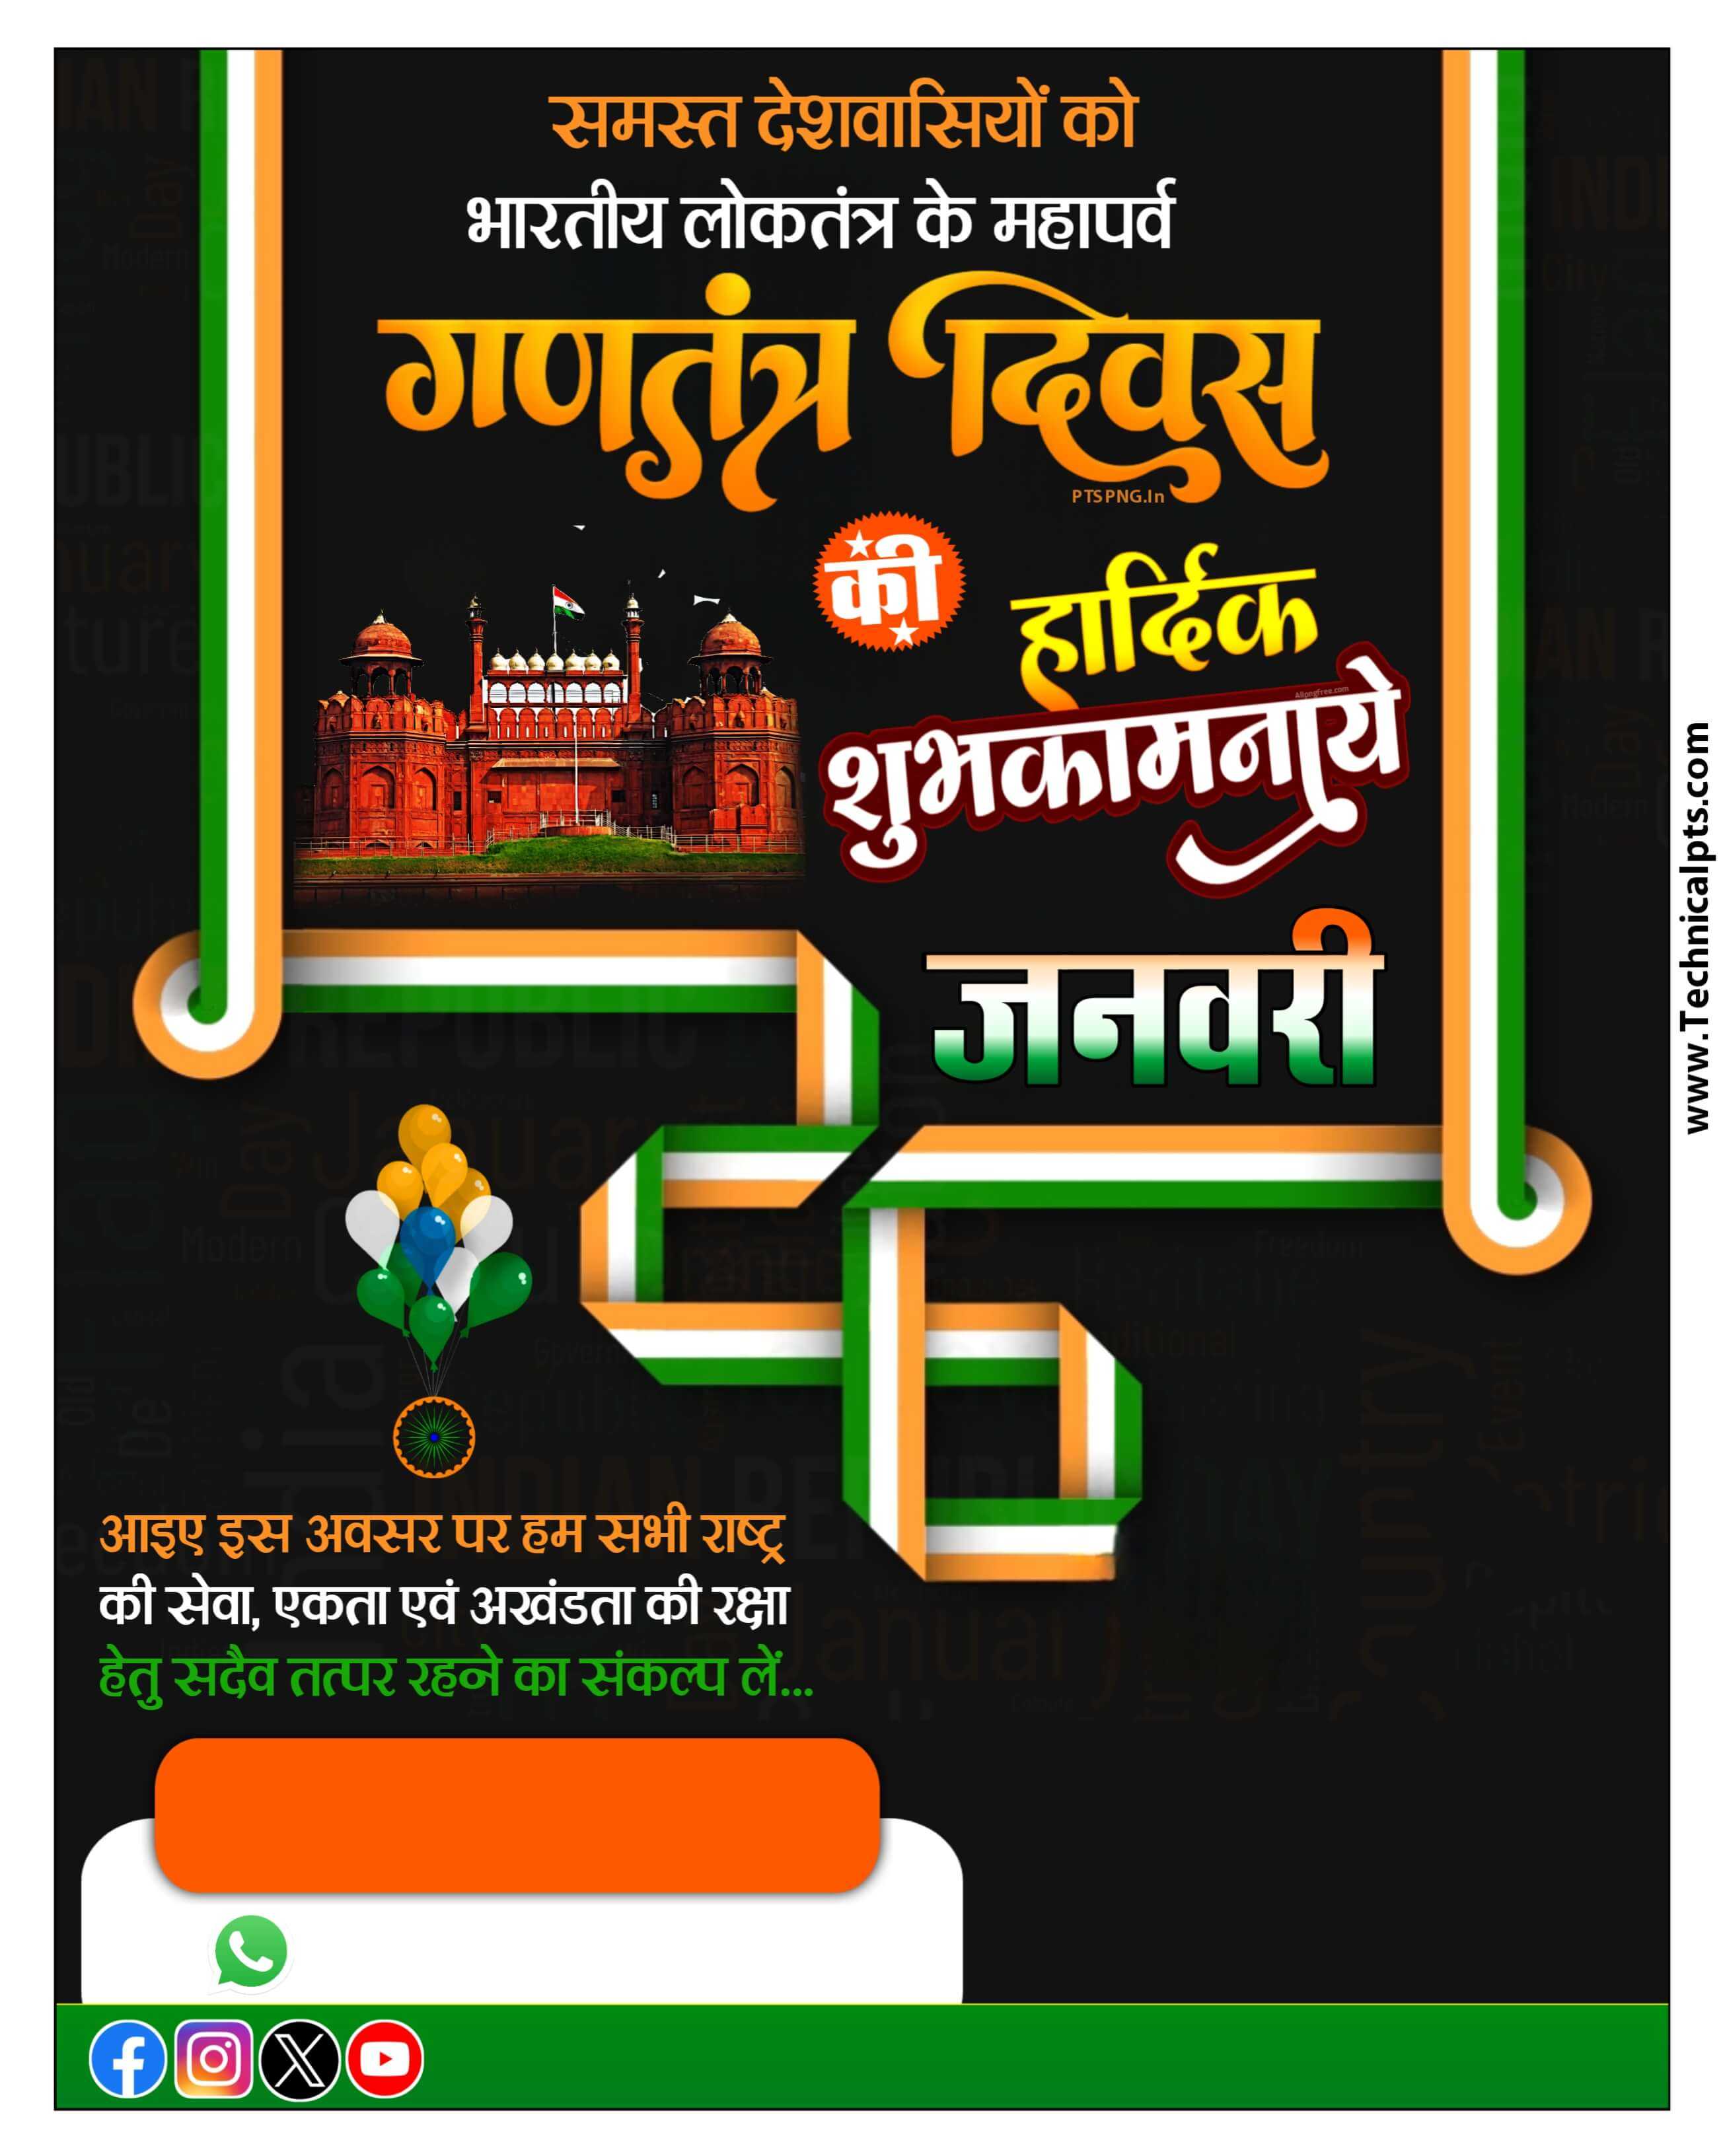 गणतंत्र दिवस 26 जनवरी banner editing plb file download| मोबाइल से 26 जनवरी का पोस्टर बनाएं| happy Republic Day banner editing PlP file download